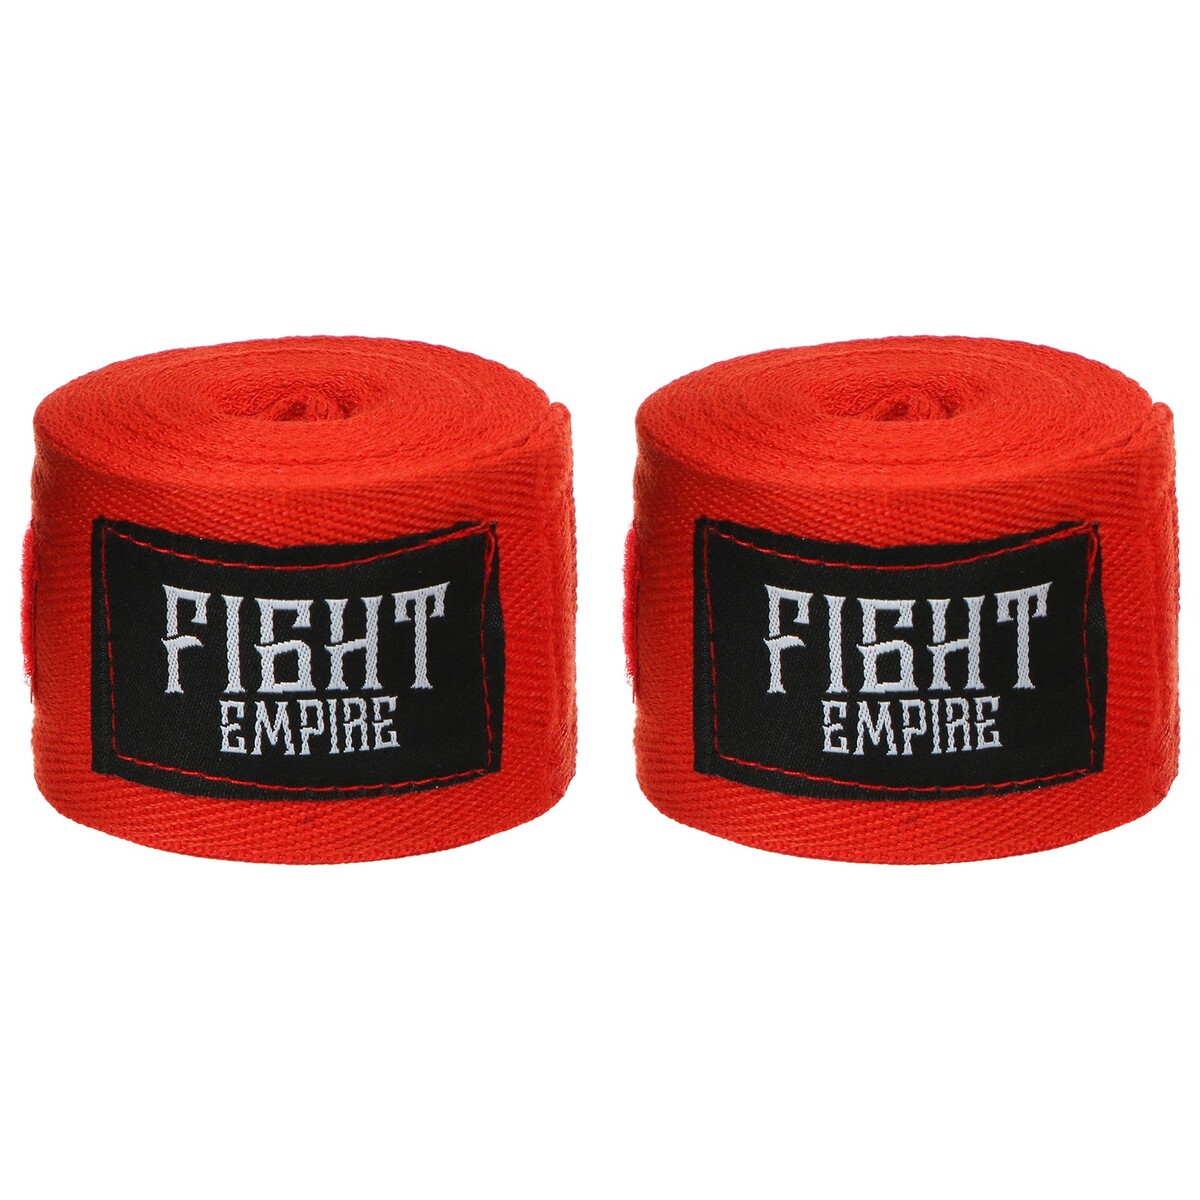   fight empire 4 ,  